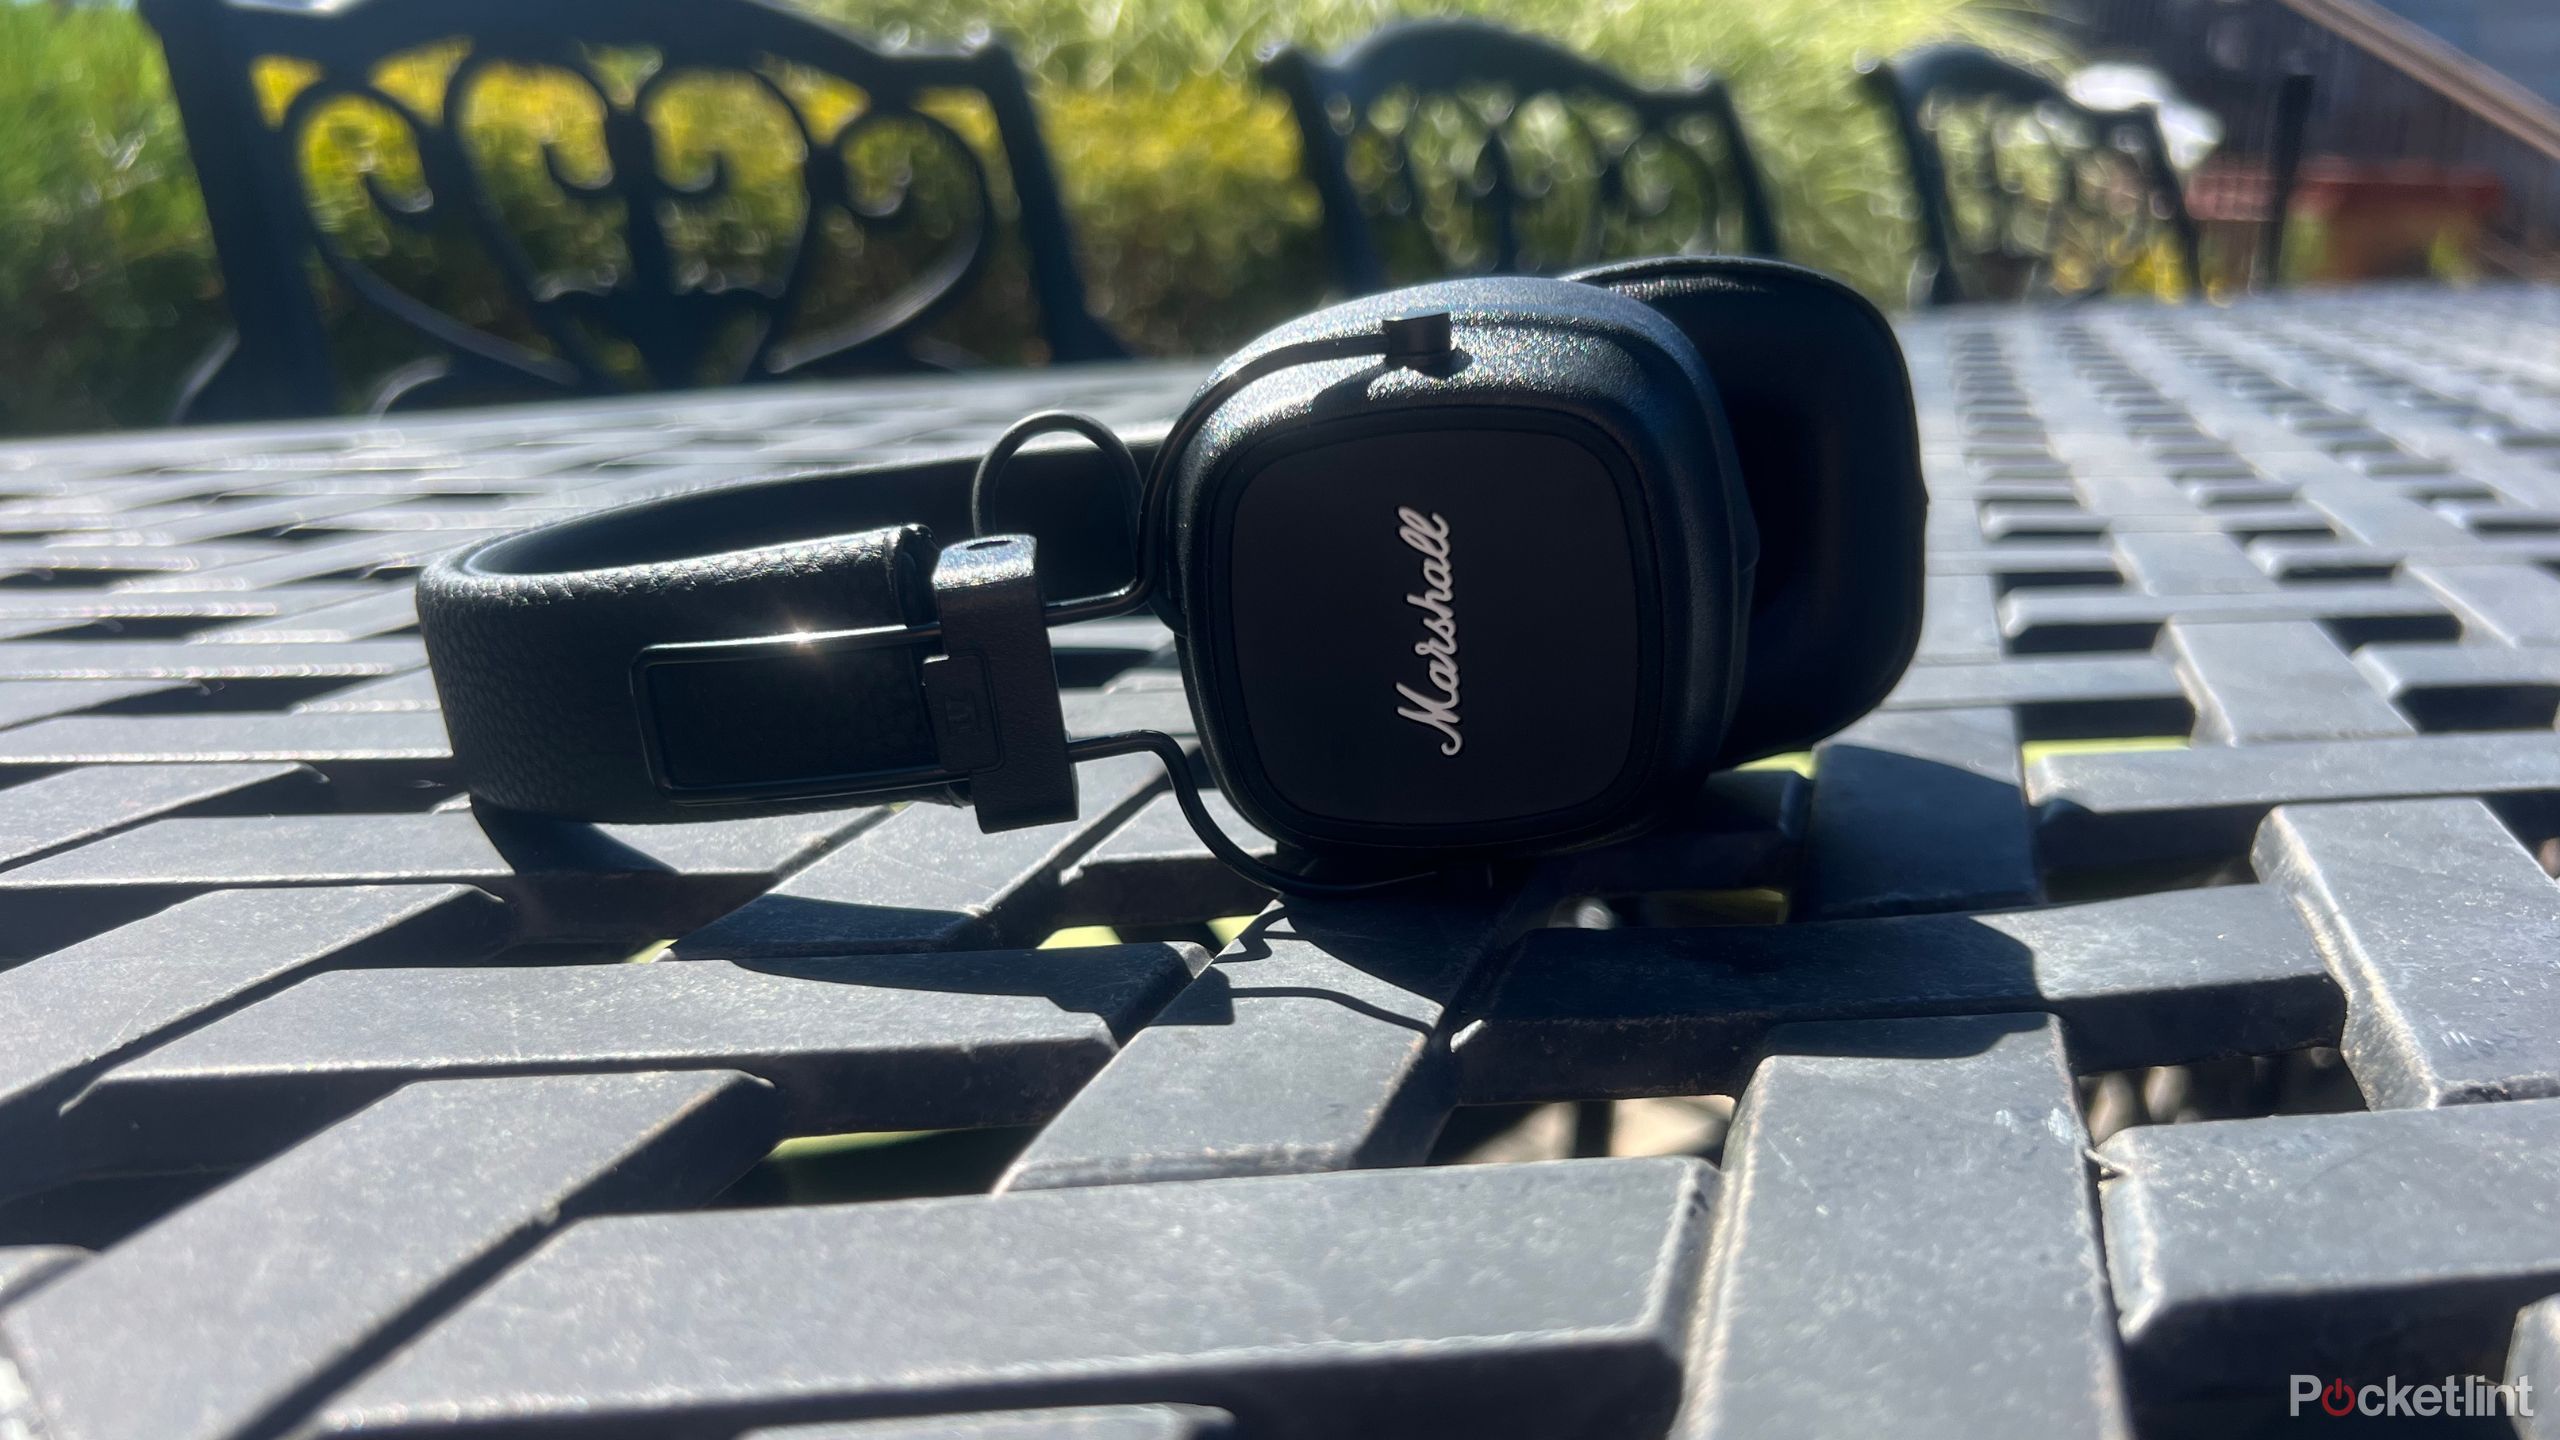 Marshall headphones on the table